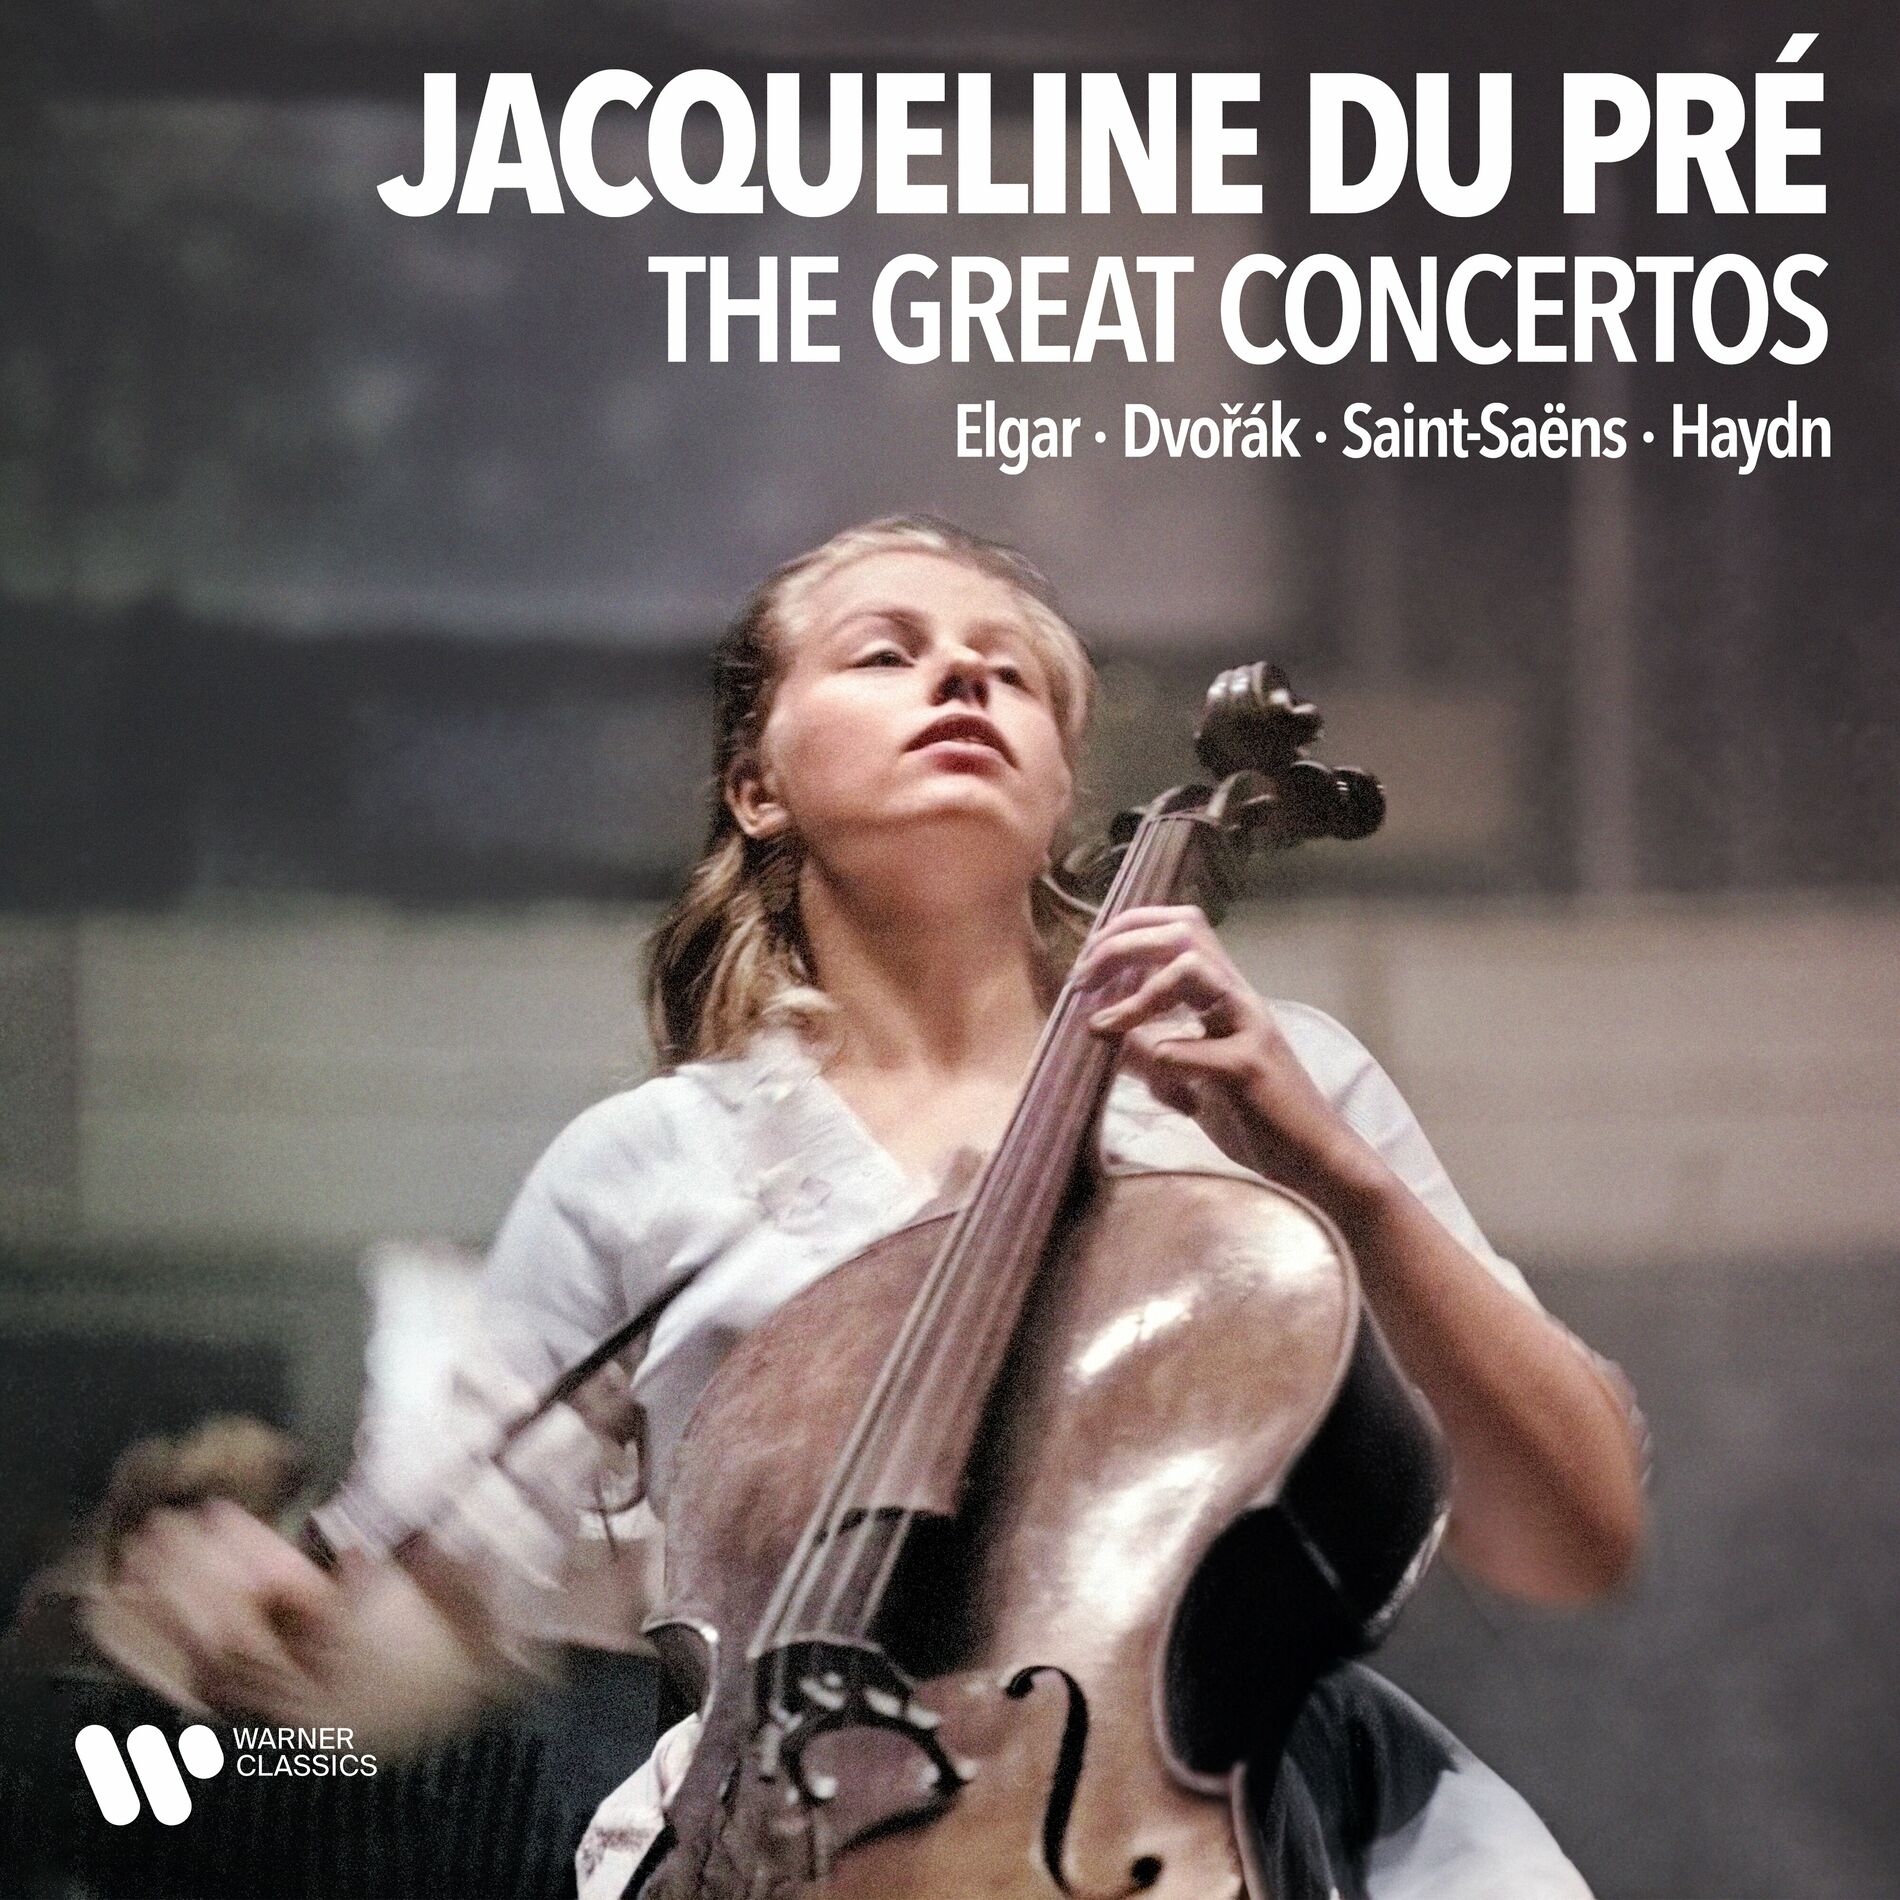 Jacqueline du Pré: albums, songs, playlists | Listen on Deezer